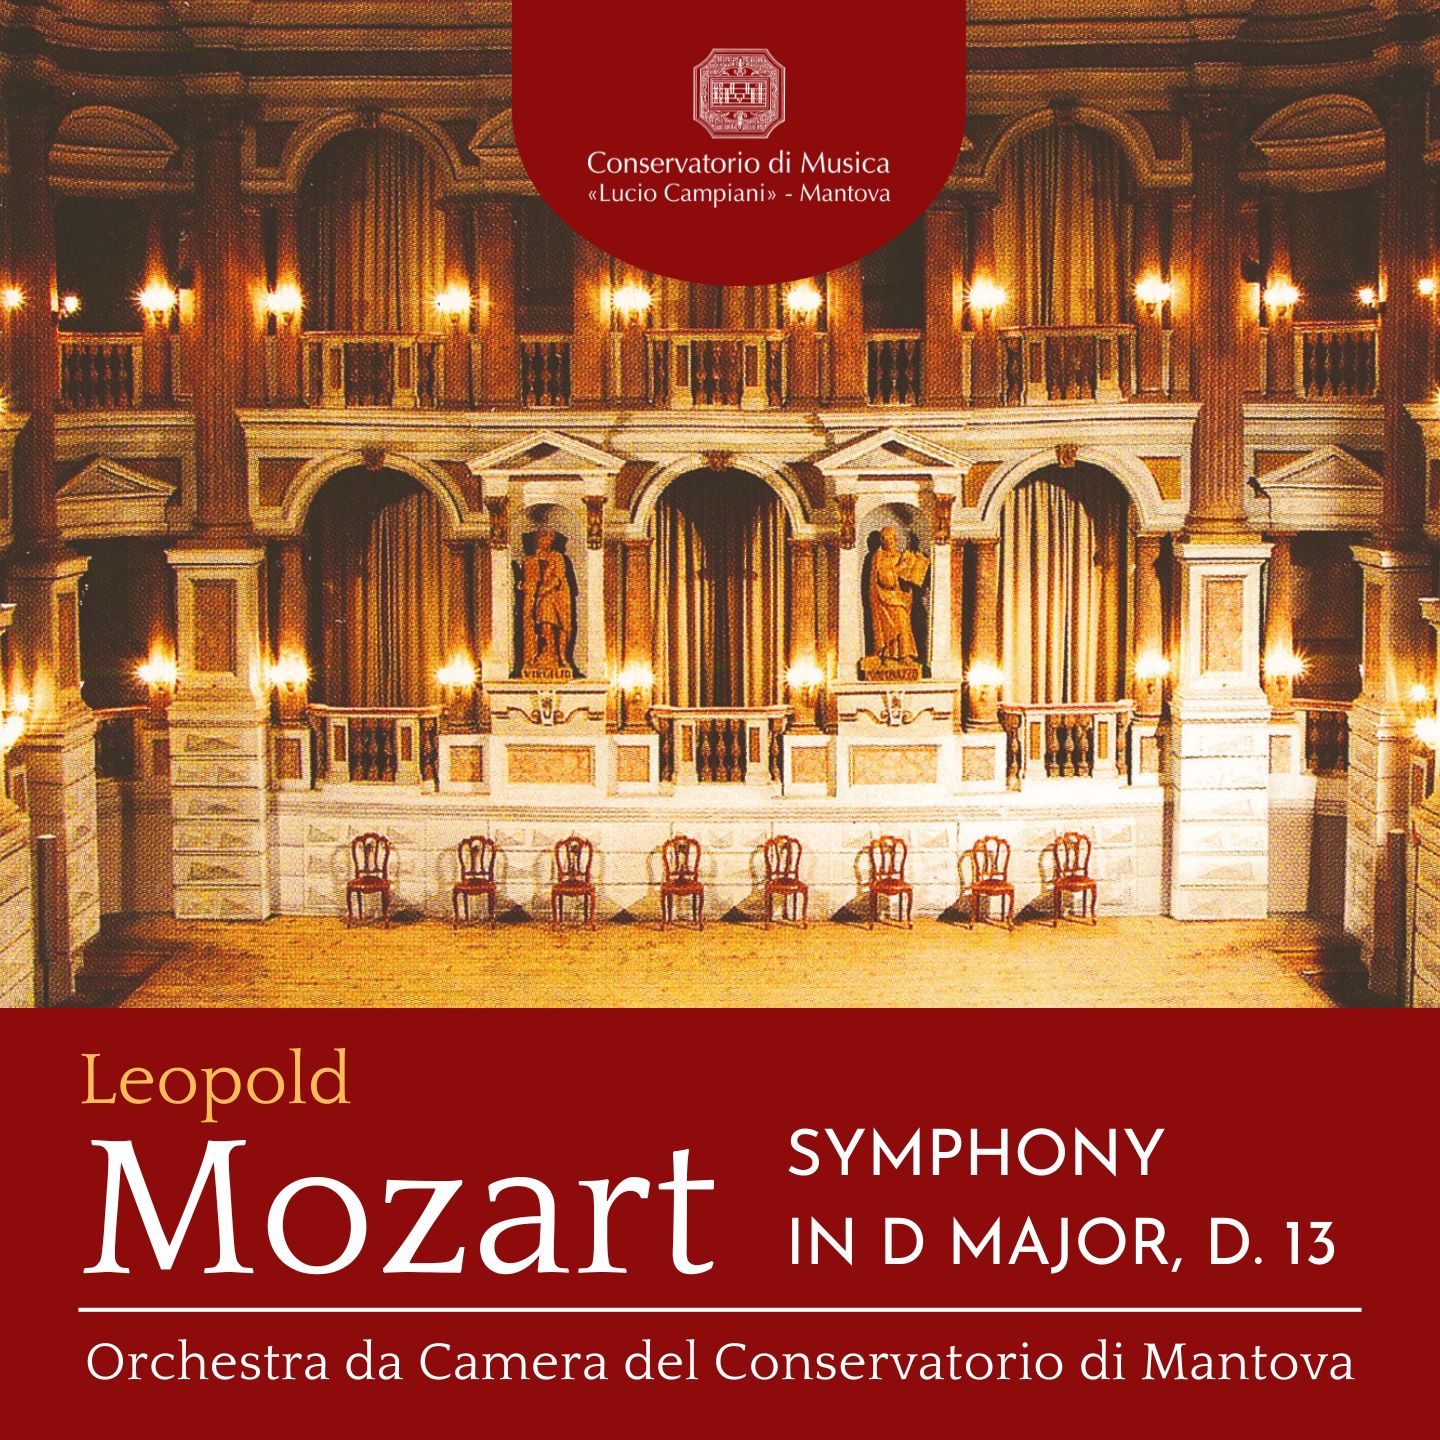 L. Mozart: Symphony in D Major, D. 13 “Non è bello quello che è bello mà quello che piace”